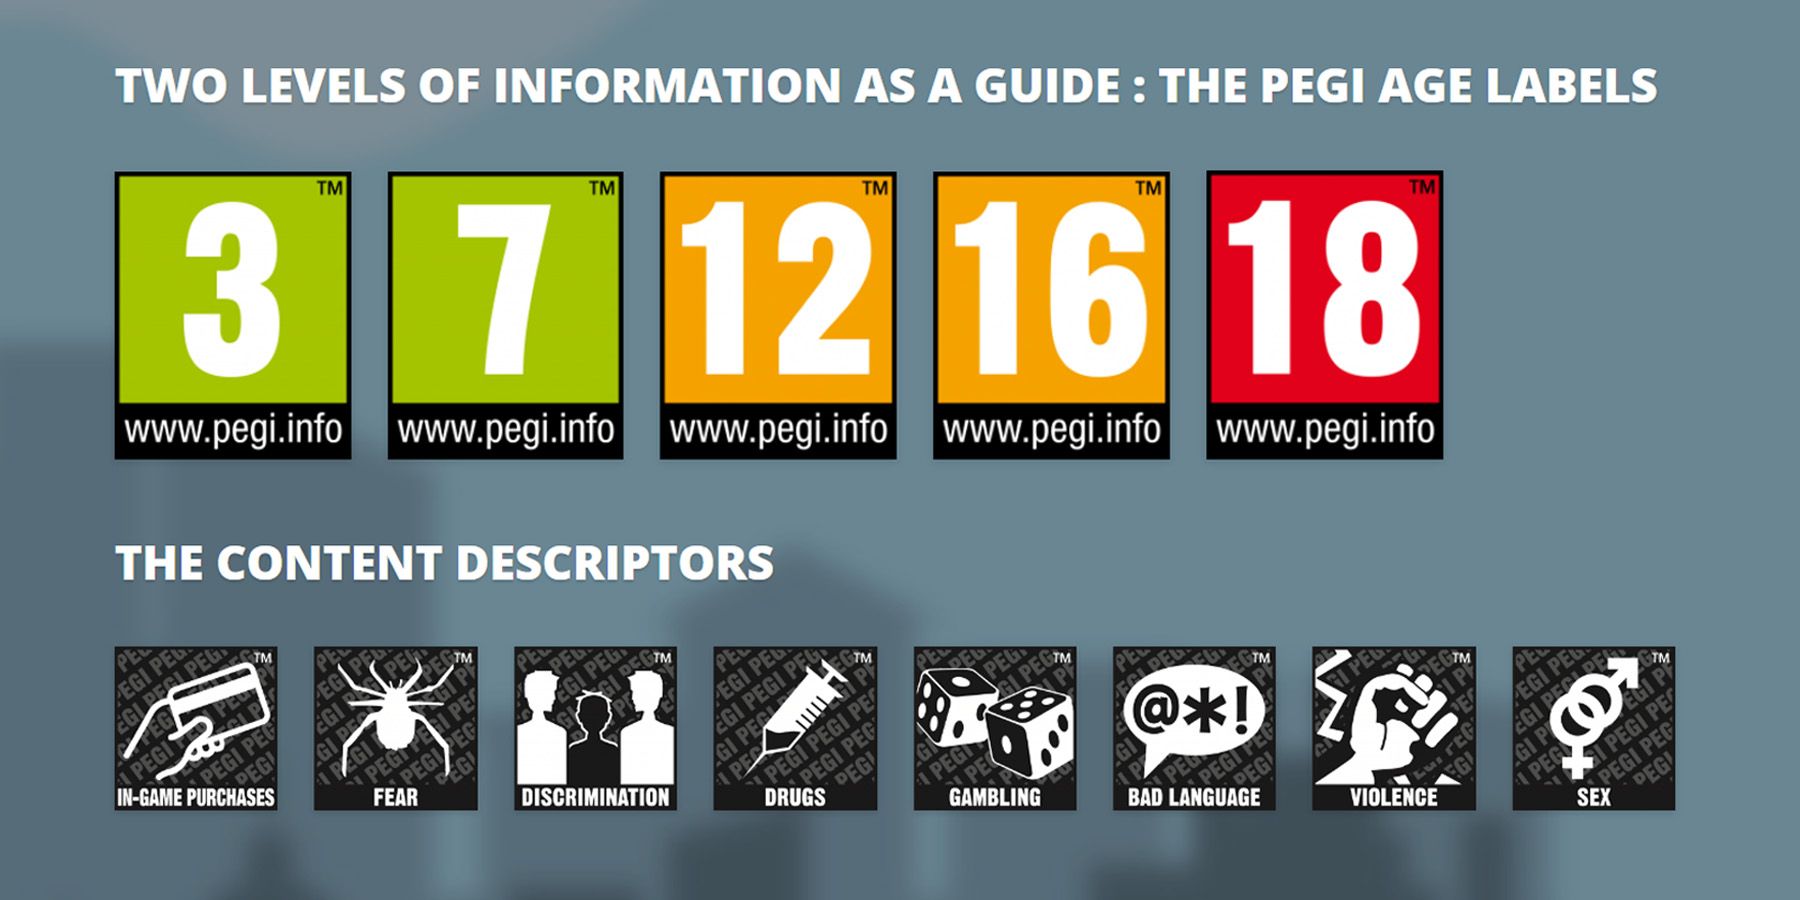 Um guia que mostra rótulos de idade PEGI e descritores de conteúdo para classificações de videogames.